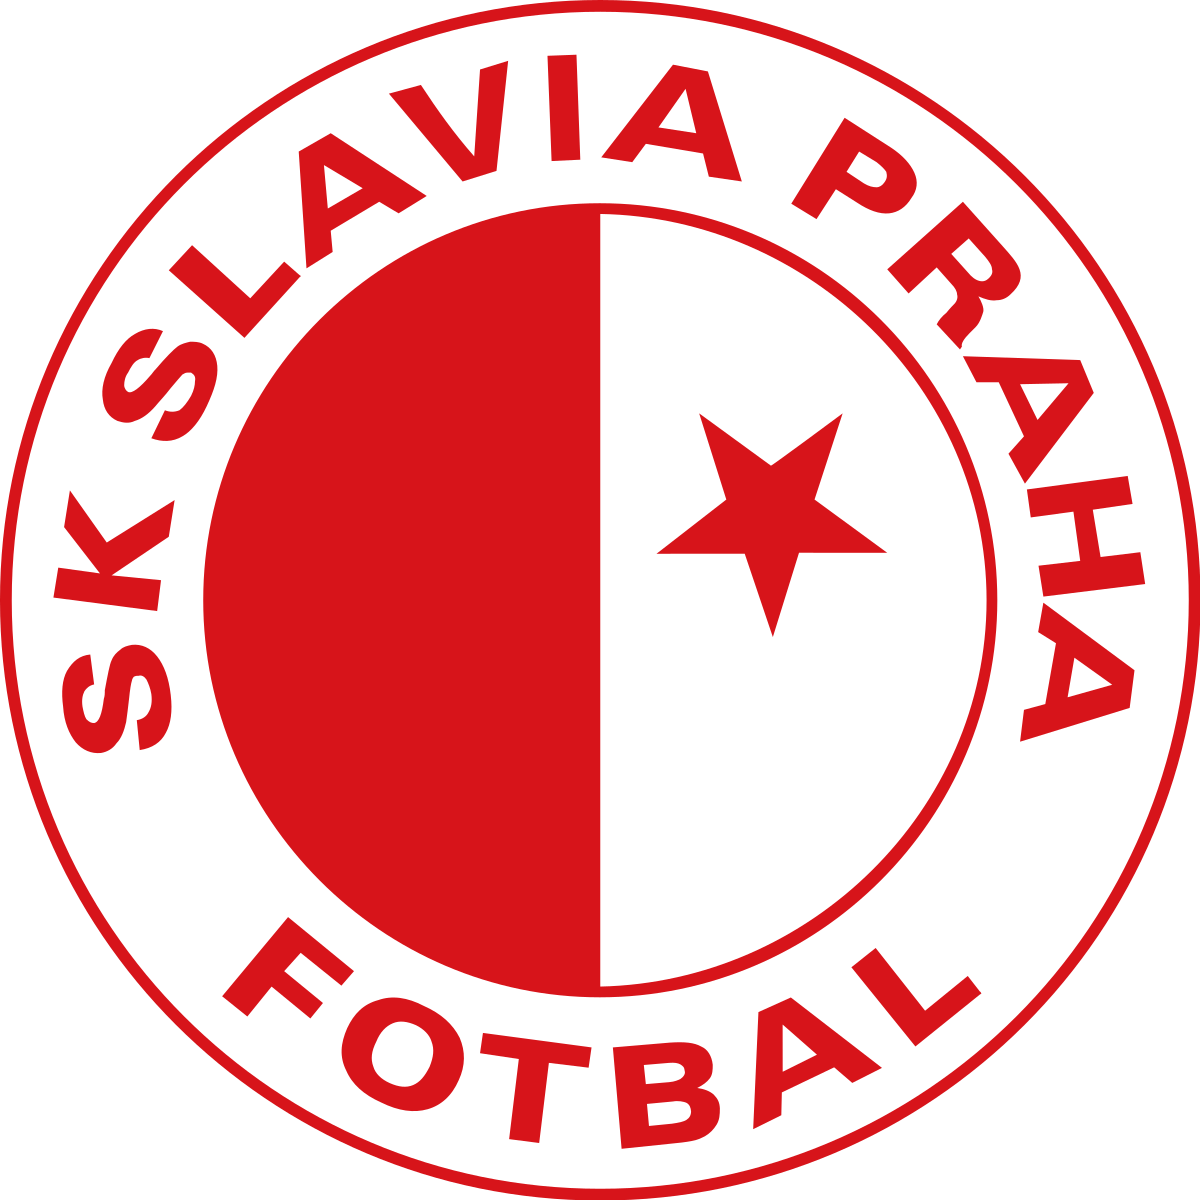 509 Slavia Prague Images, Stock Photos, 3D objects, & Vectors